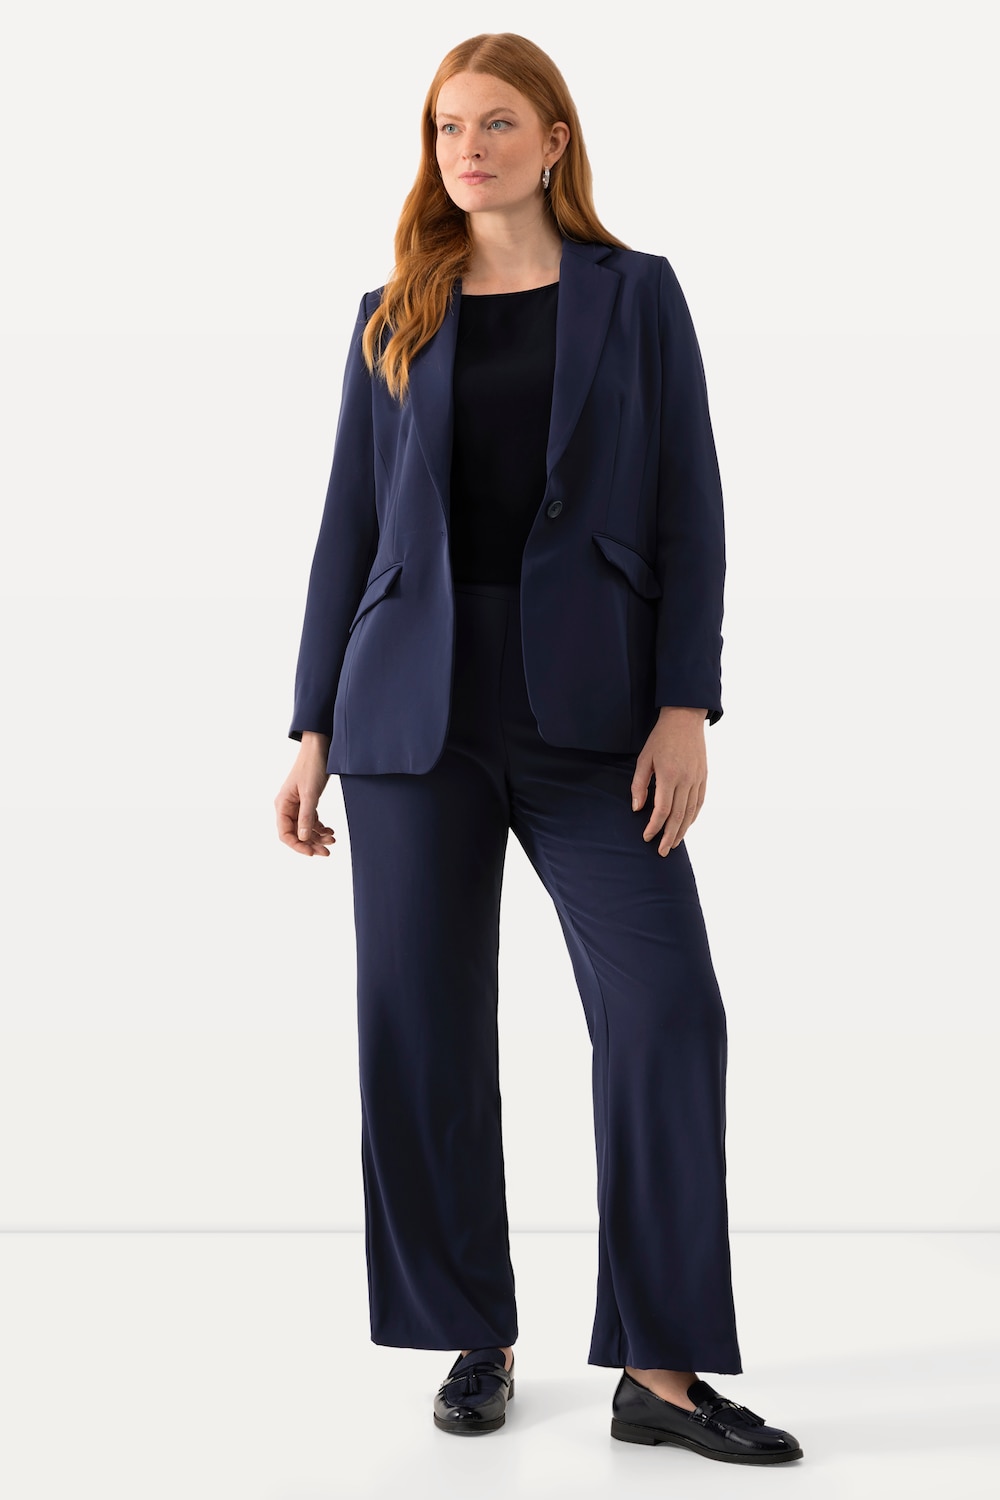 Große Größen Anzughose, Damen, blau, Größe: 52, Kunstseide/Polyester, Ulla Popken von Ulla Popken